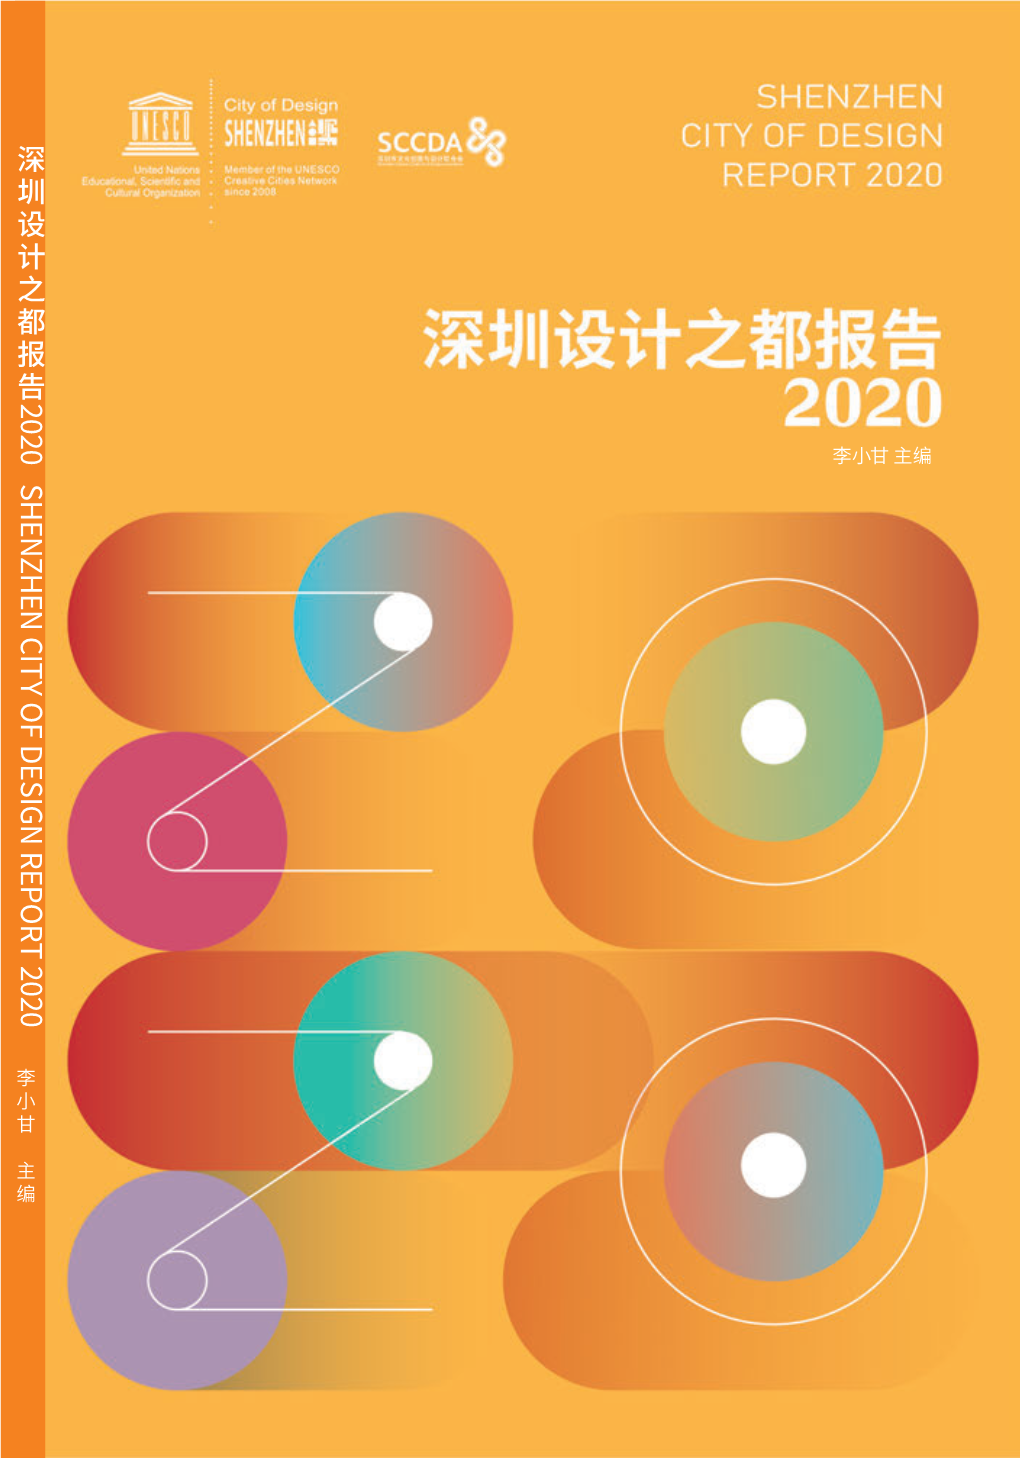 28 Jun, 2021 深圳设计之都报告（2020）